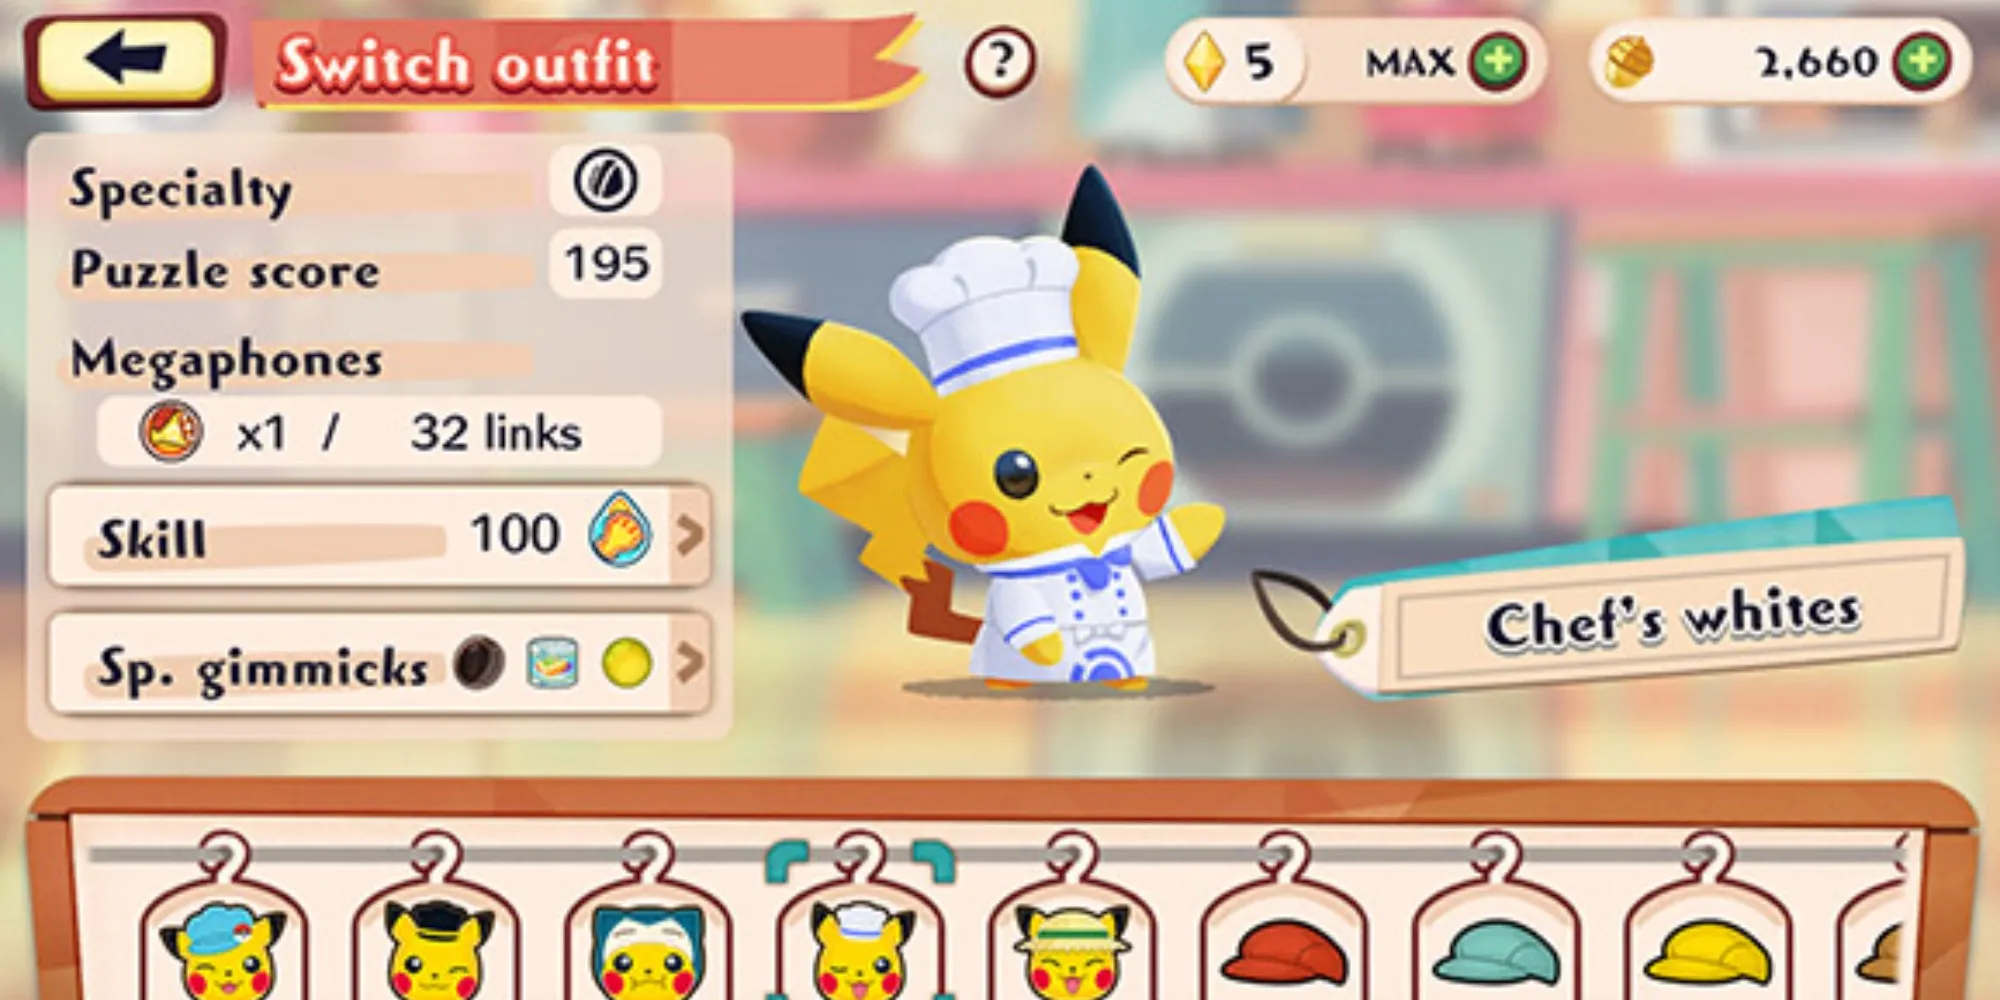 Il giocatore prepara un piatto utilizzando ingredienti freschi con Pikachu